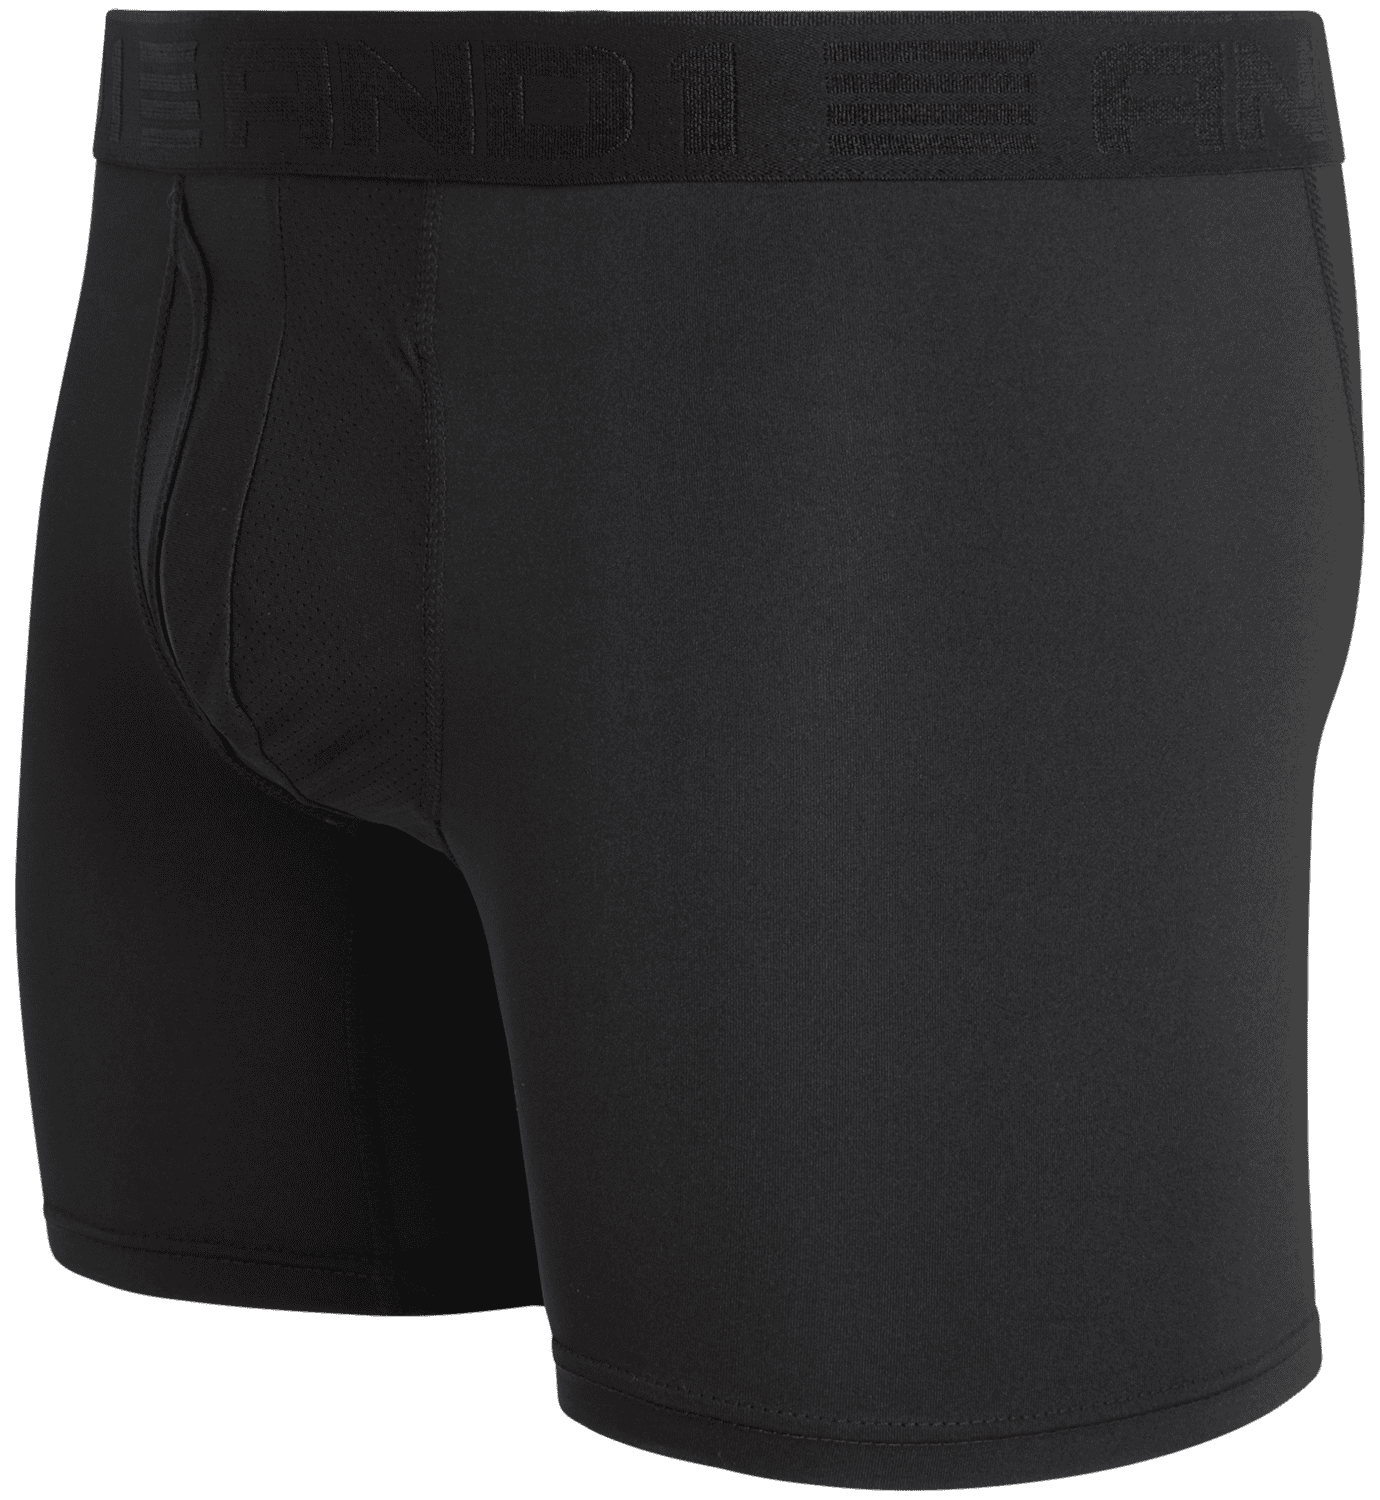 AND1 Men’s Underwear Pro Platinum Boxer Briefs, 6 Pack, 6′ – Home & Garden